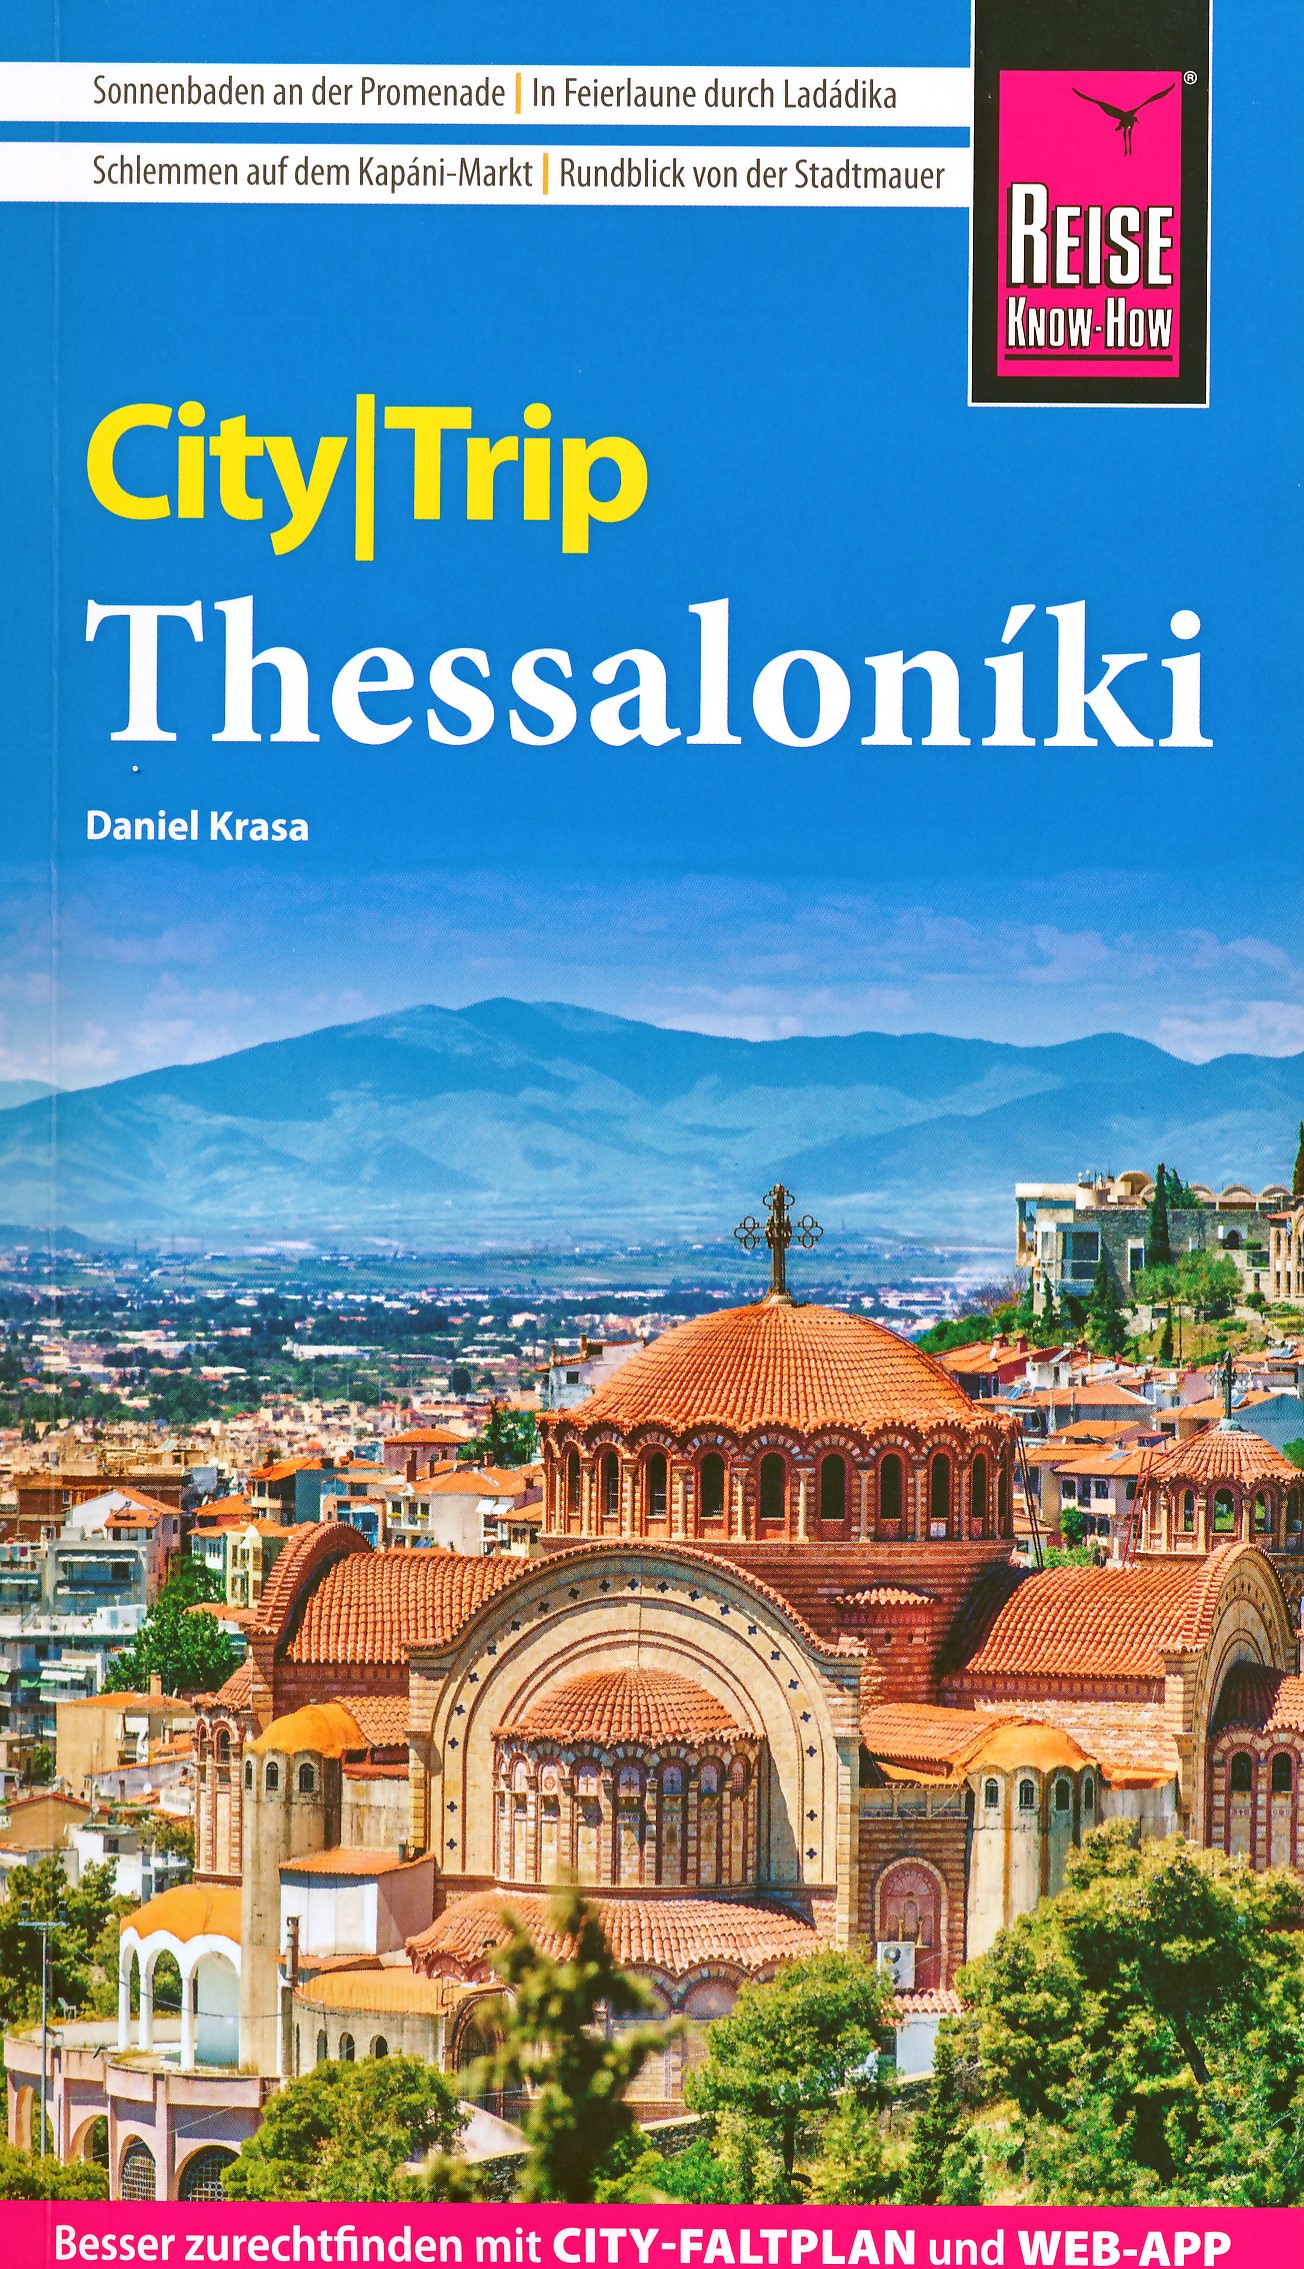 Online bestellen: Reisgids CityTrip Thessaloniki | Reise Know-How Verlag